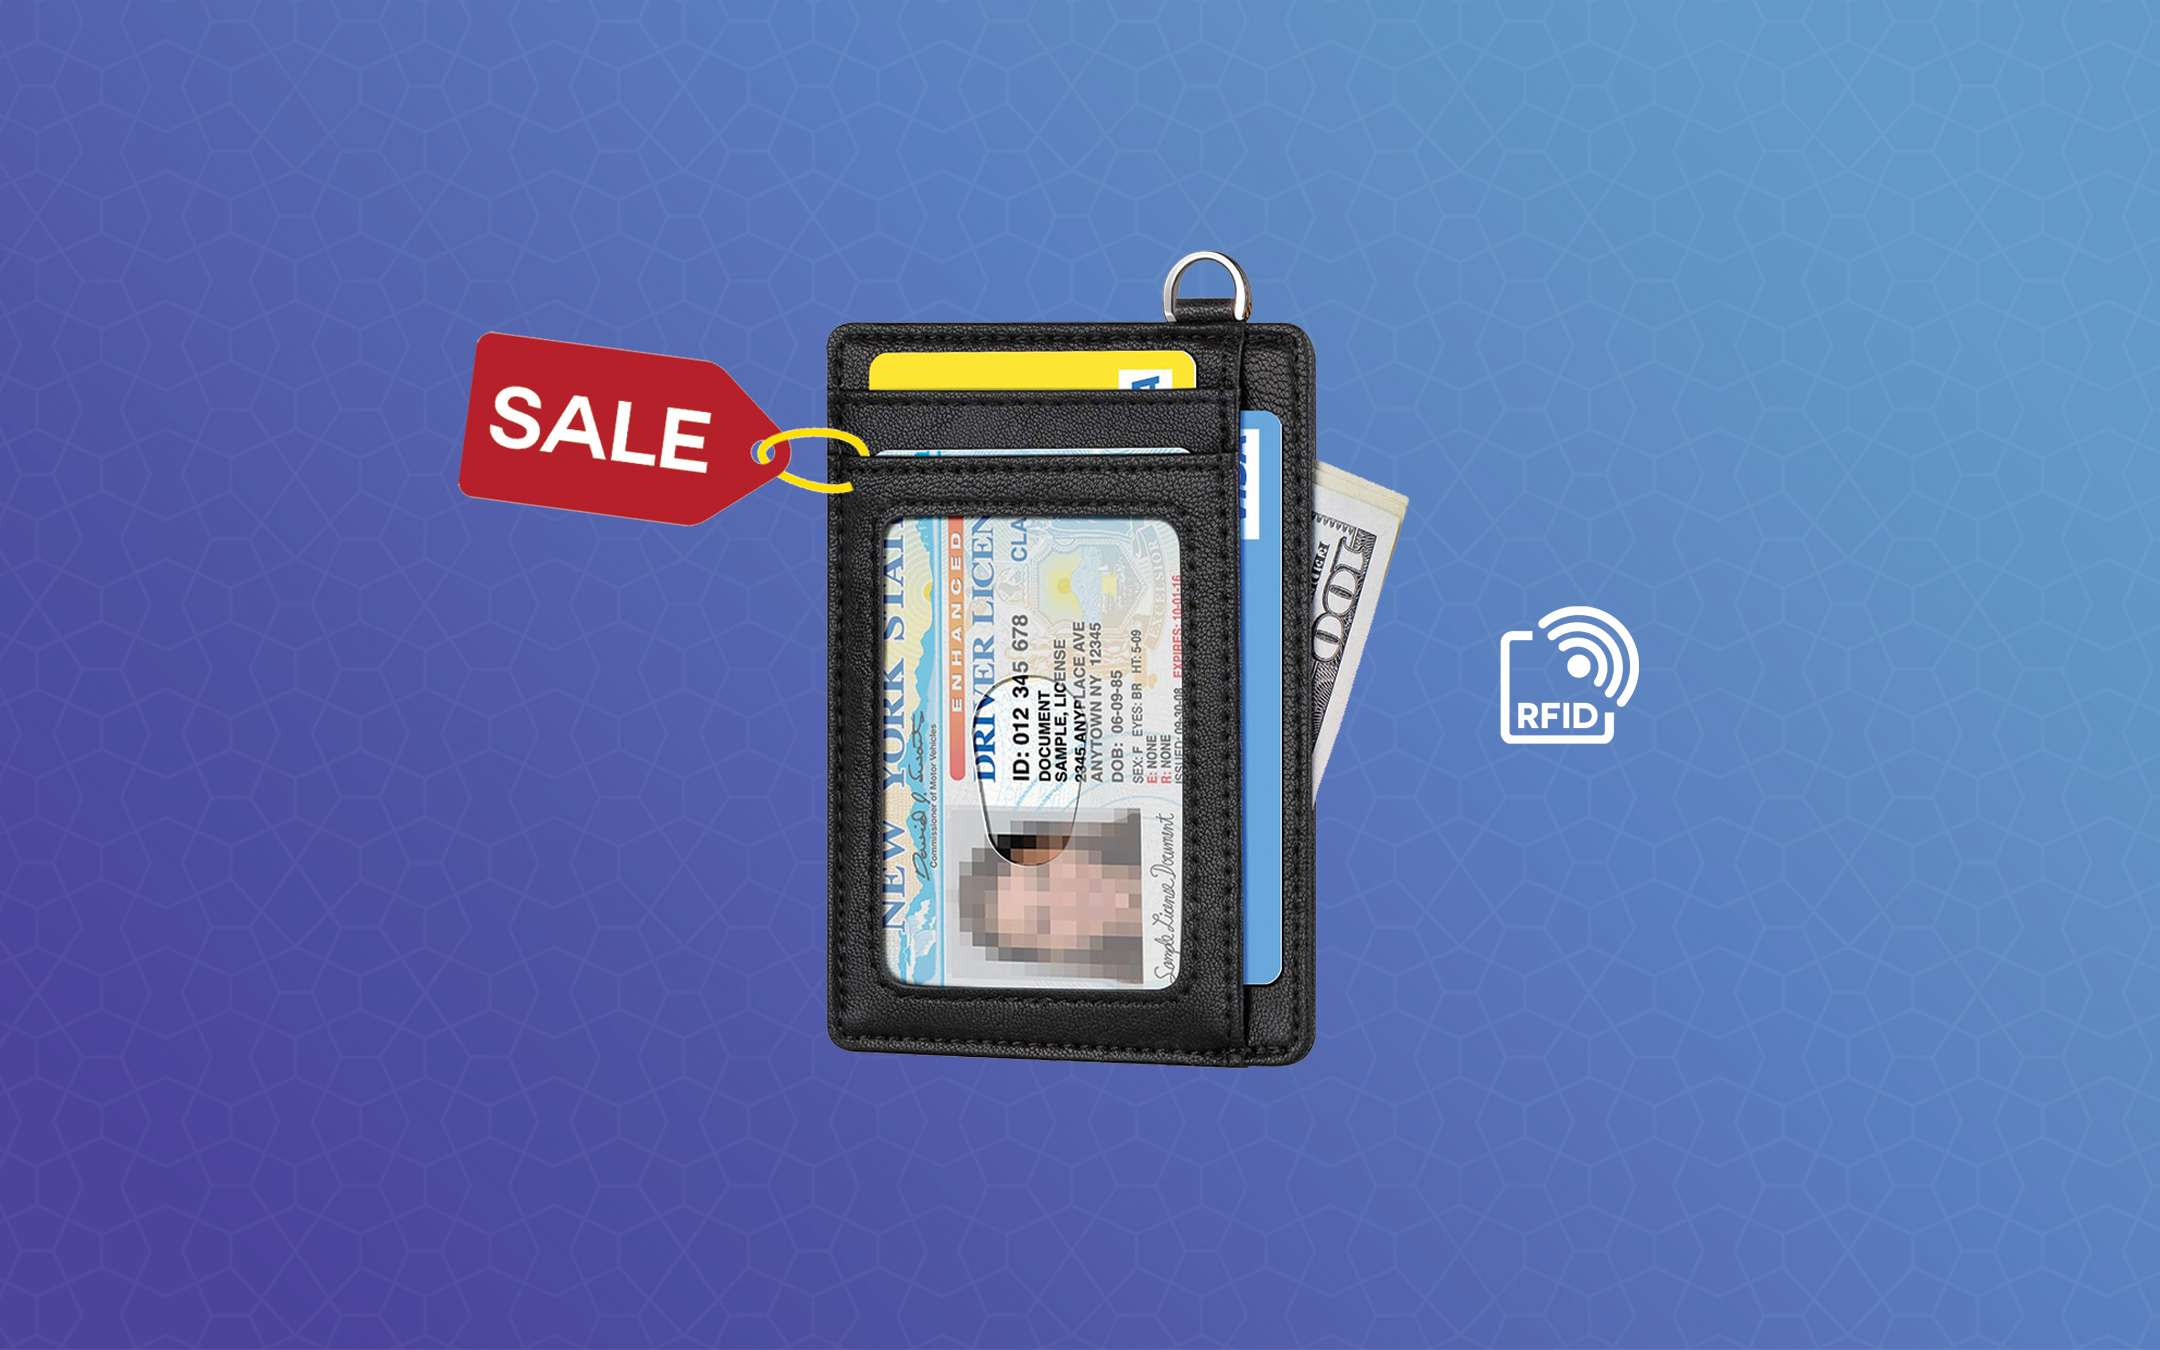 Proteggi le carte di credito grazie a questo portafogli con blocco RFID